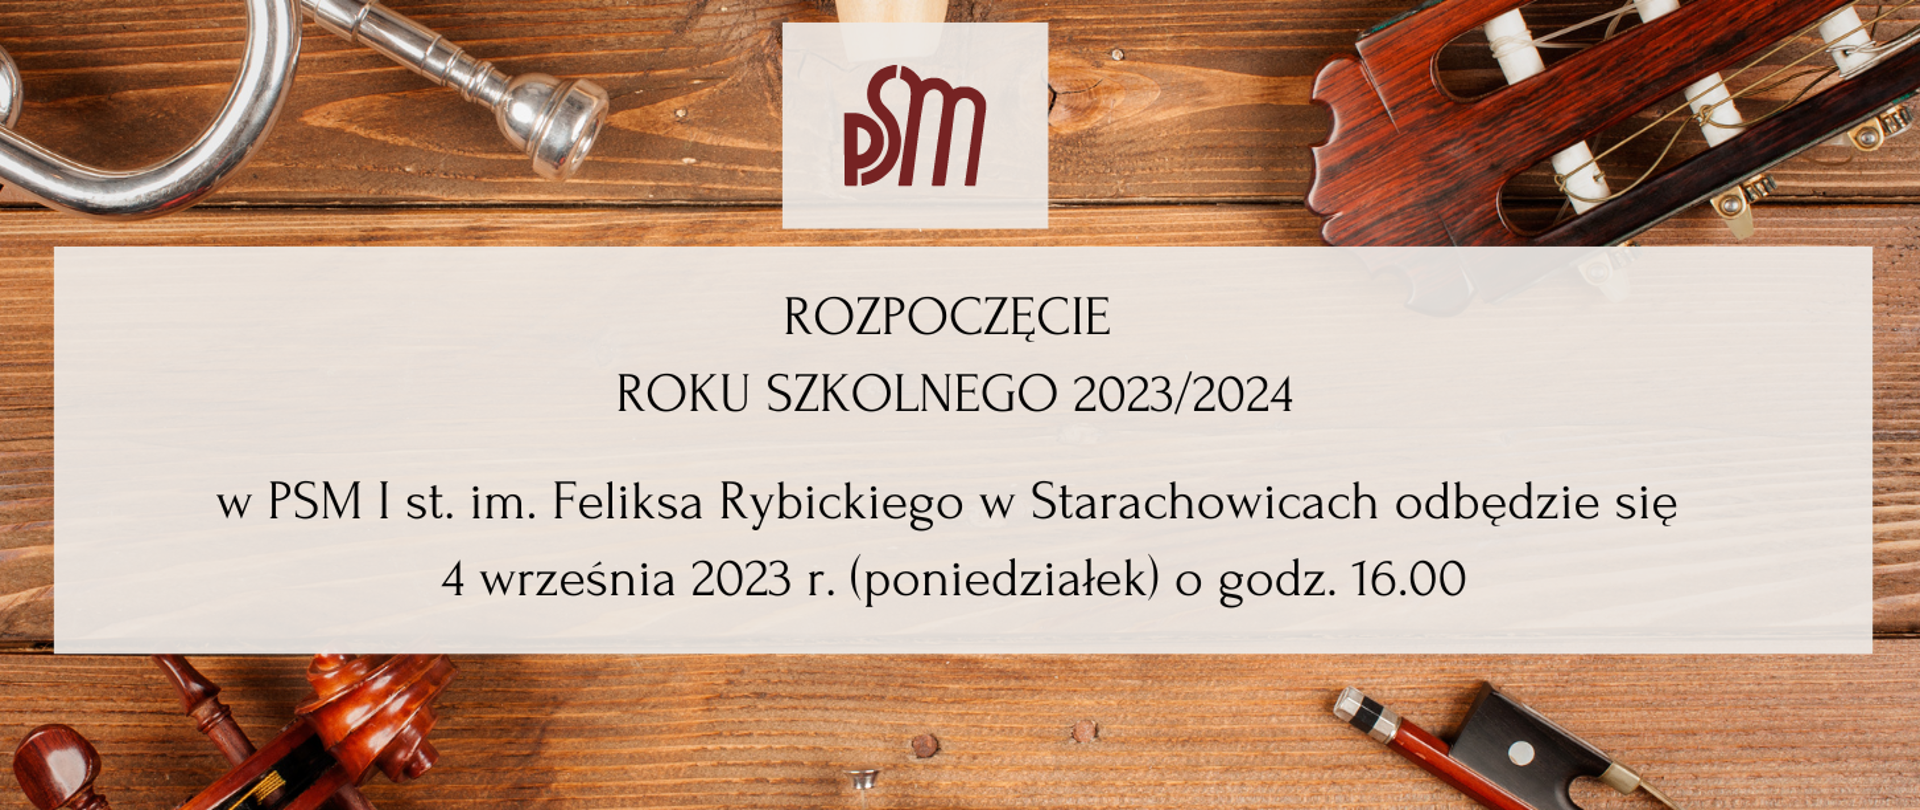 Plakat- Logo PSM bordowe, napisy Rozpoczęcie Roku Szkolnego 2023/24 w PSM I st. im. Feliksa Rybickiego odbędzie się 4 września 2023 r. ( poniedziałek) o godz. 16.00 , tło instrumenty muzyczne